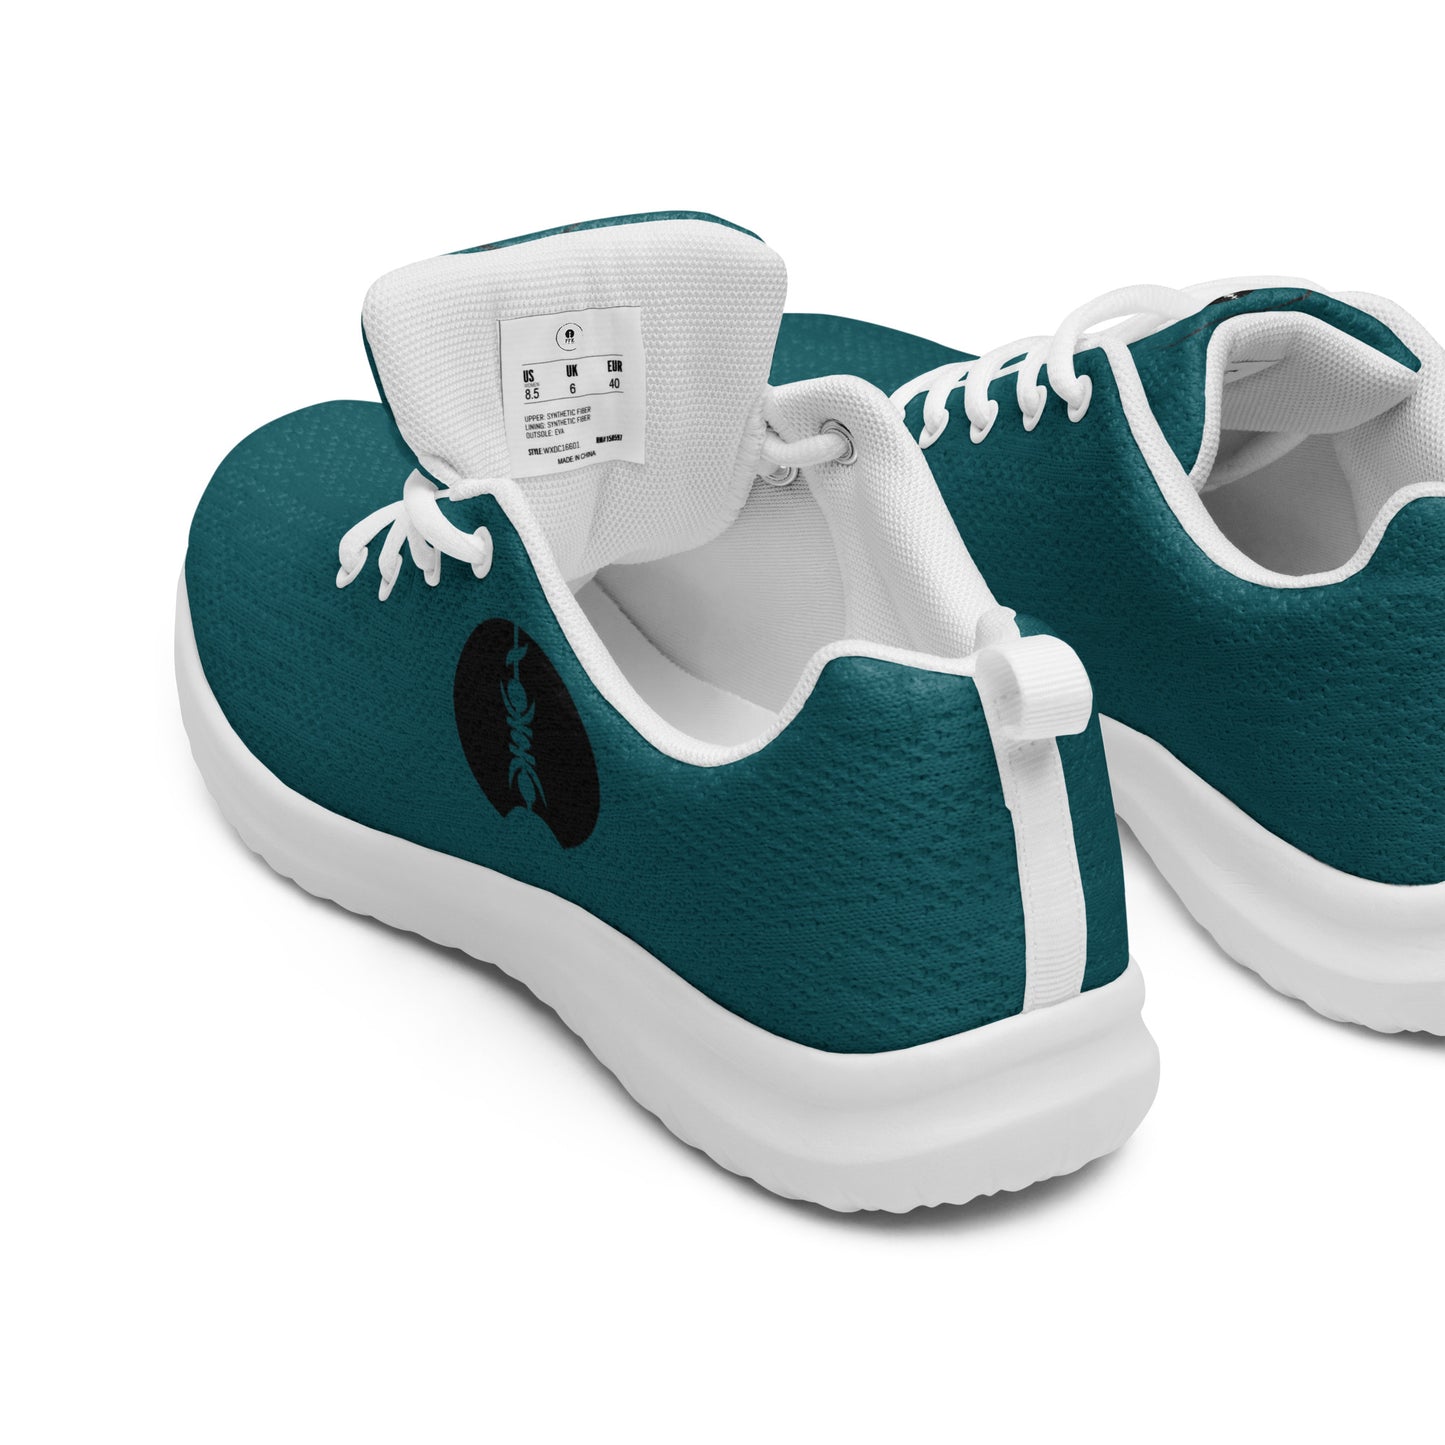 Chaussures de sport pour homme FFK - blue